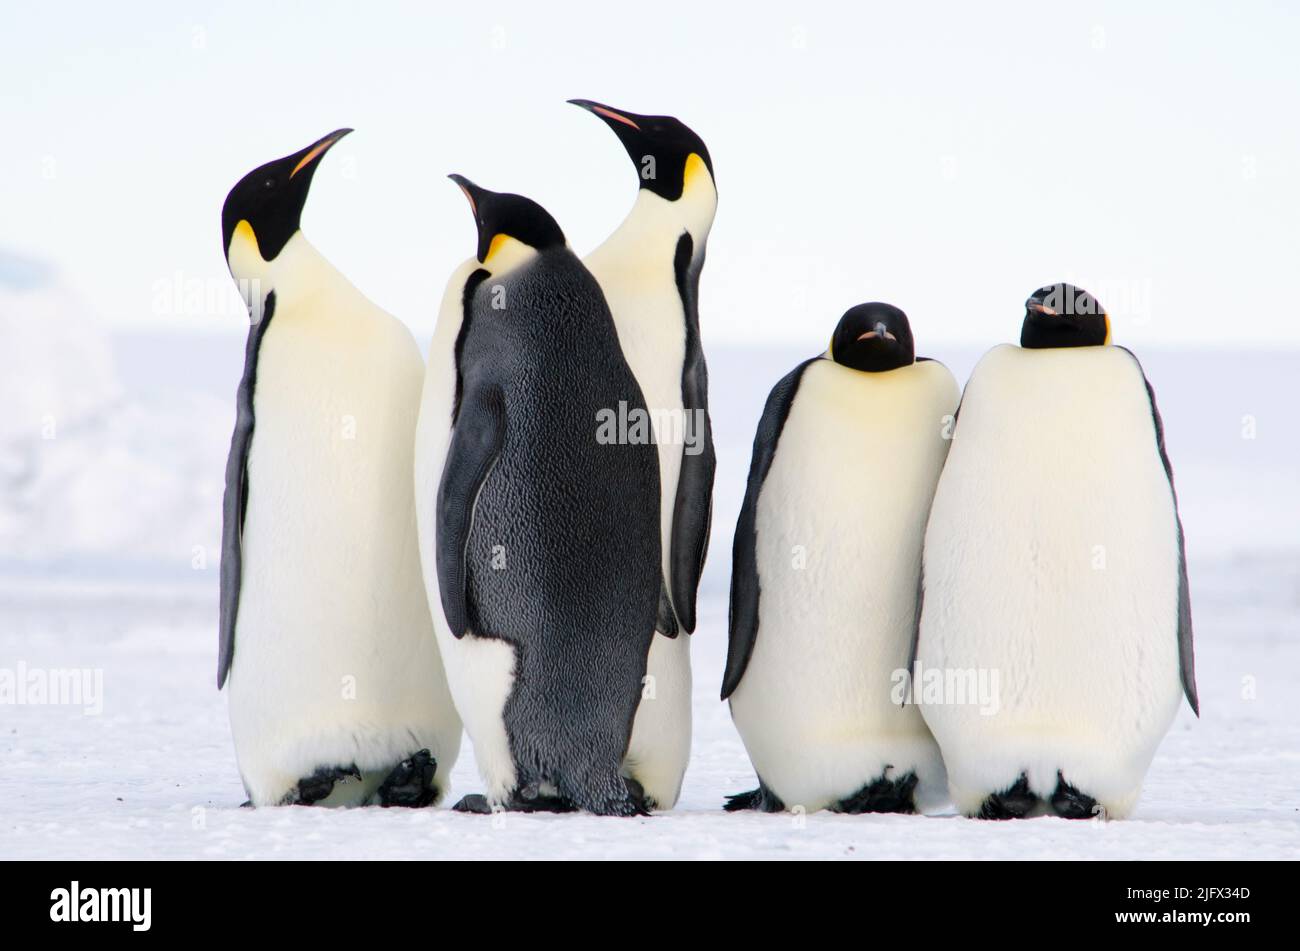 Les pingouins de l'empereur, la plus grande de toutes les espèces de pingouins vivants, sont capturés sur cette photo près de la baie d'Erebus, en Antarctique. Le pingouin empereur (Aptenodytes forsteri) est le plus haut et le plus lourd de toutes les espèces de pingouins vivantes et est endémique à l'Antarctique. Crédit : W.Link/USGS (Numéro de permis d'image 1032-1917) Banque D'Images